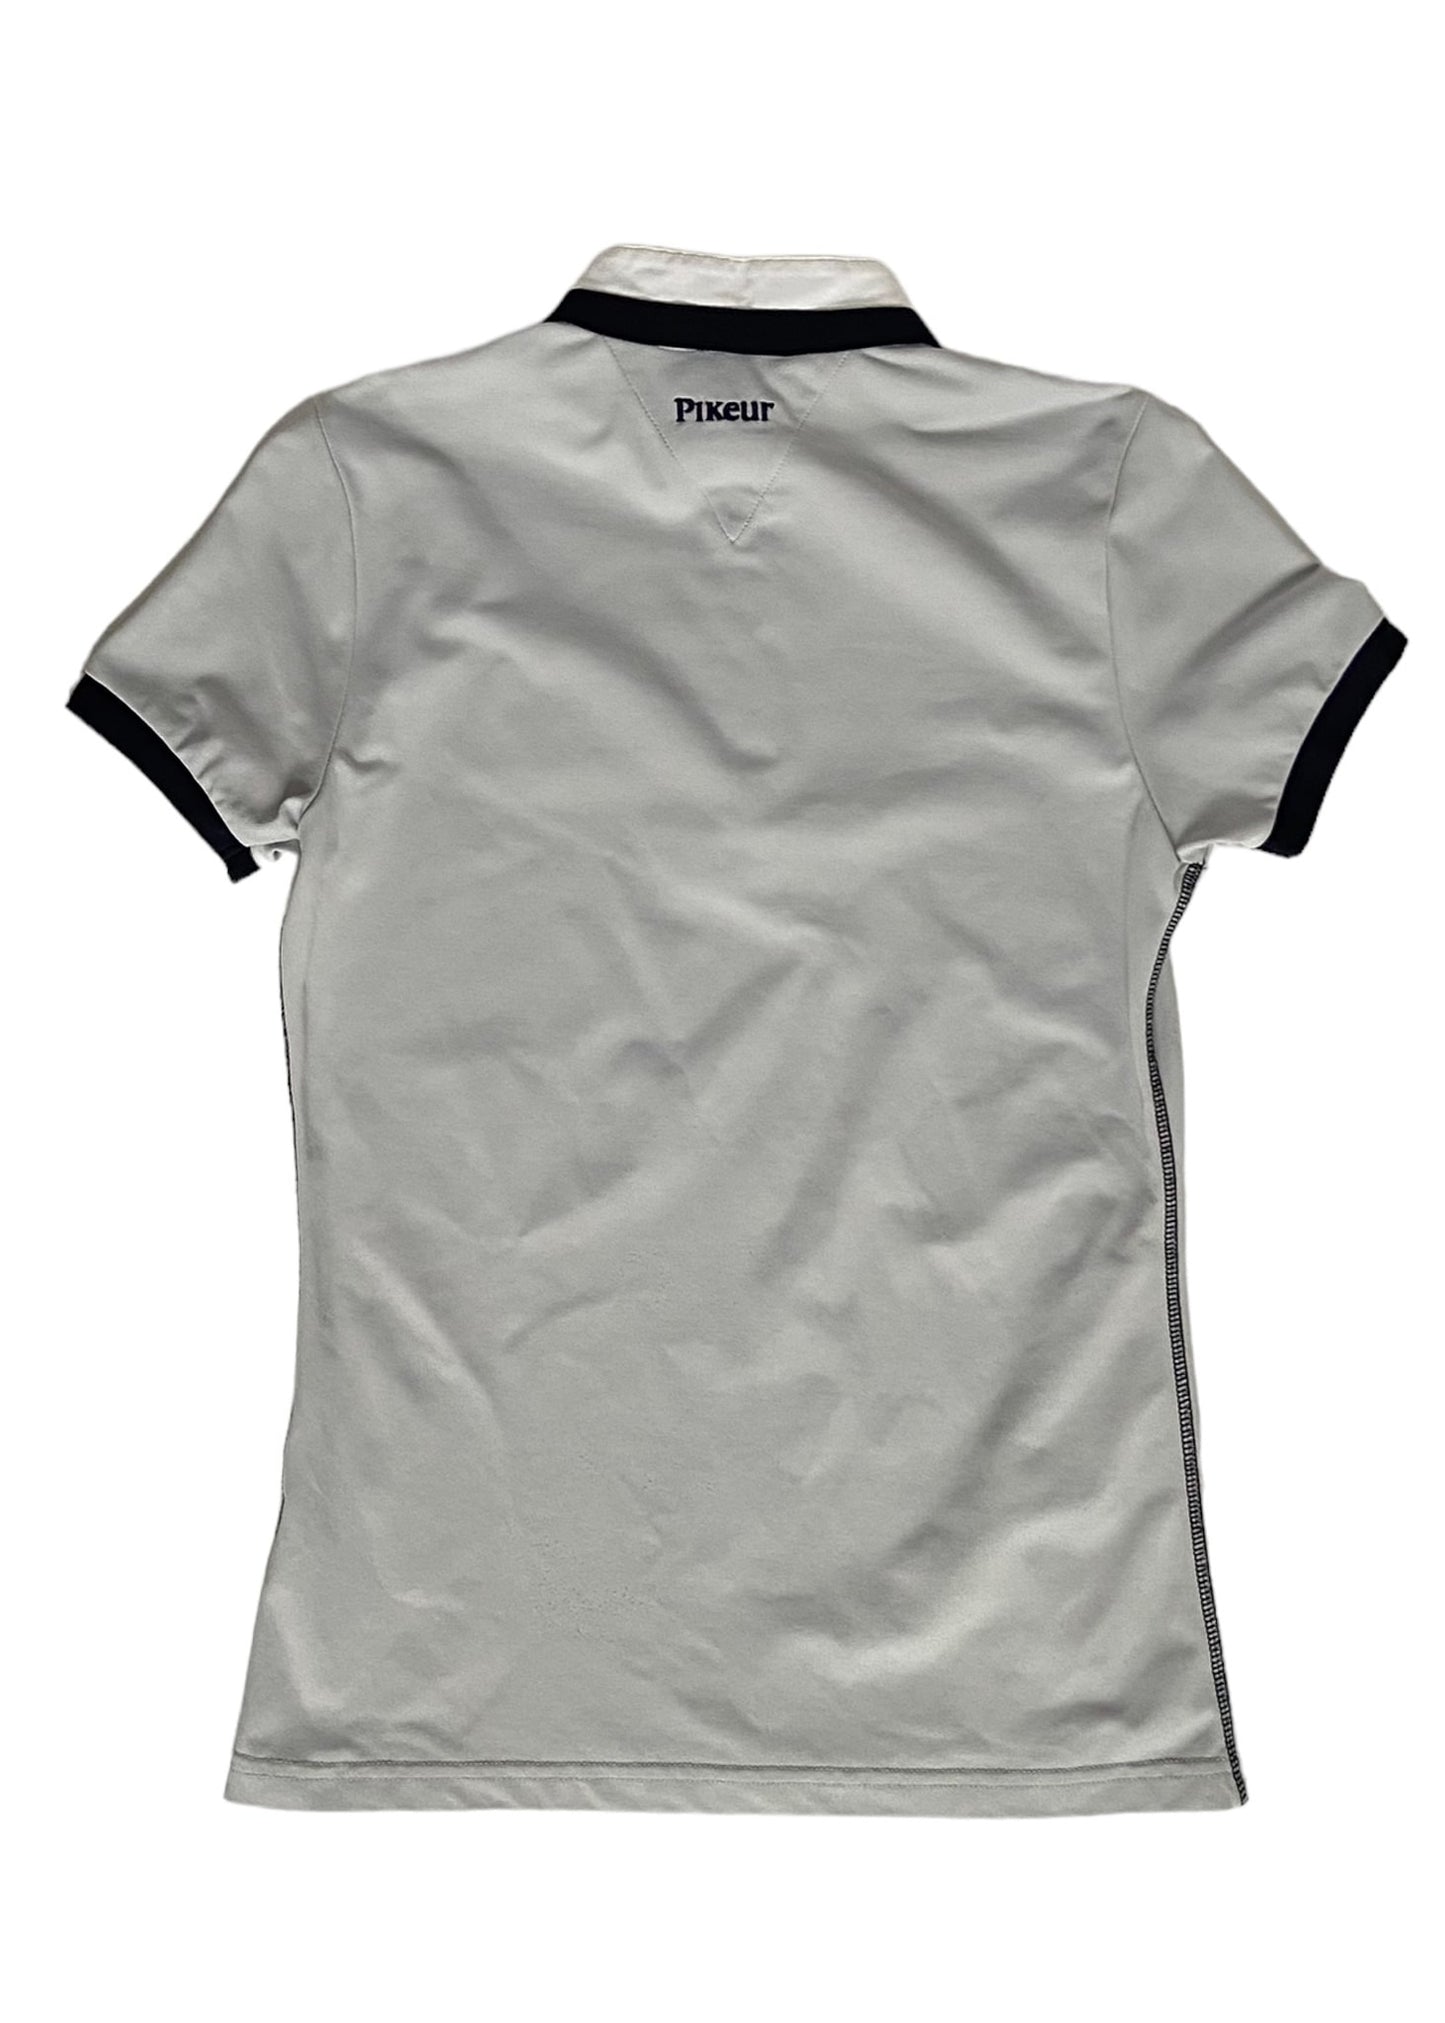 Pikeur Sabina Competition Shirt - Grey - Women's XS